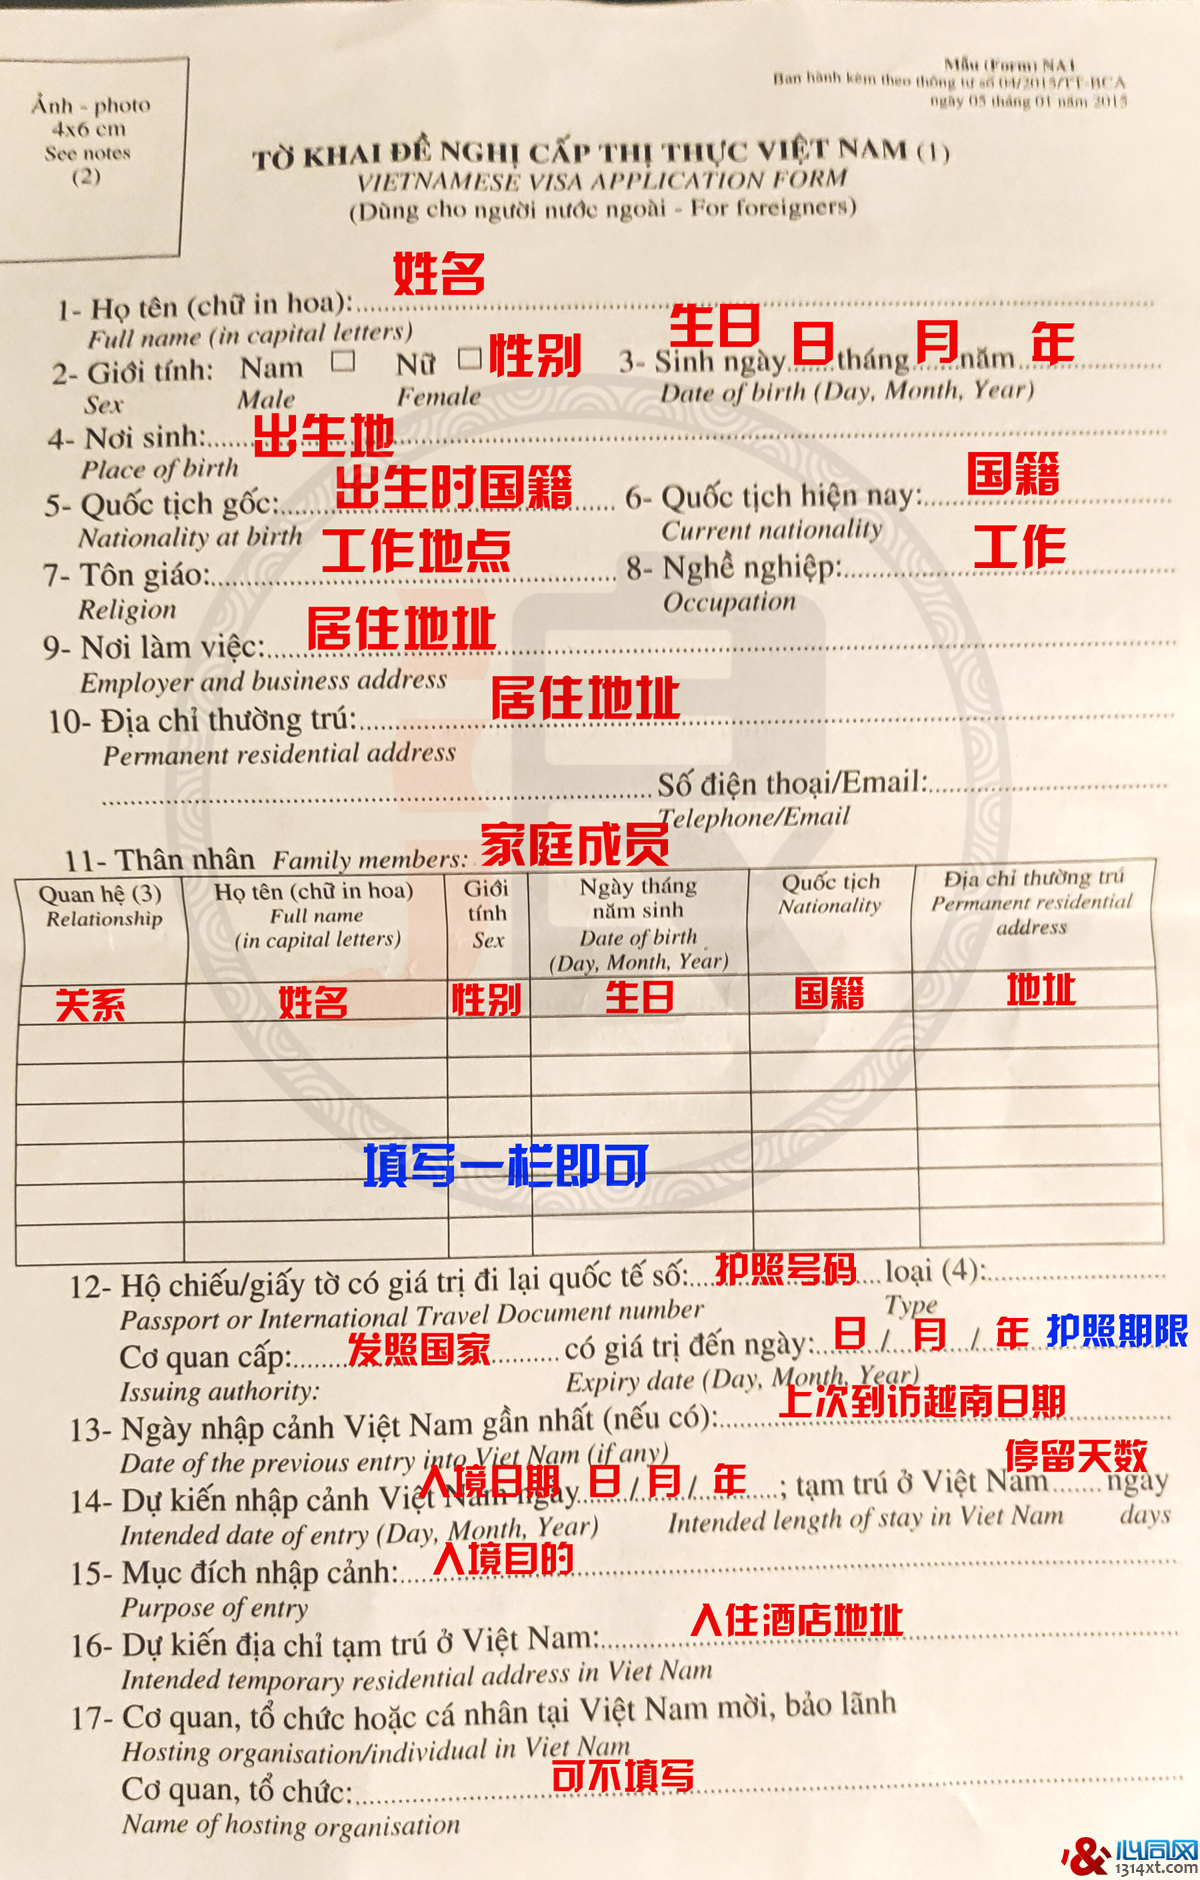 越南落地签证攻略 申请表格填写中文模板